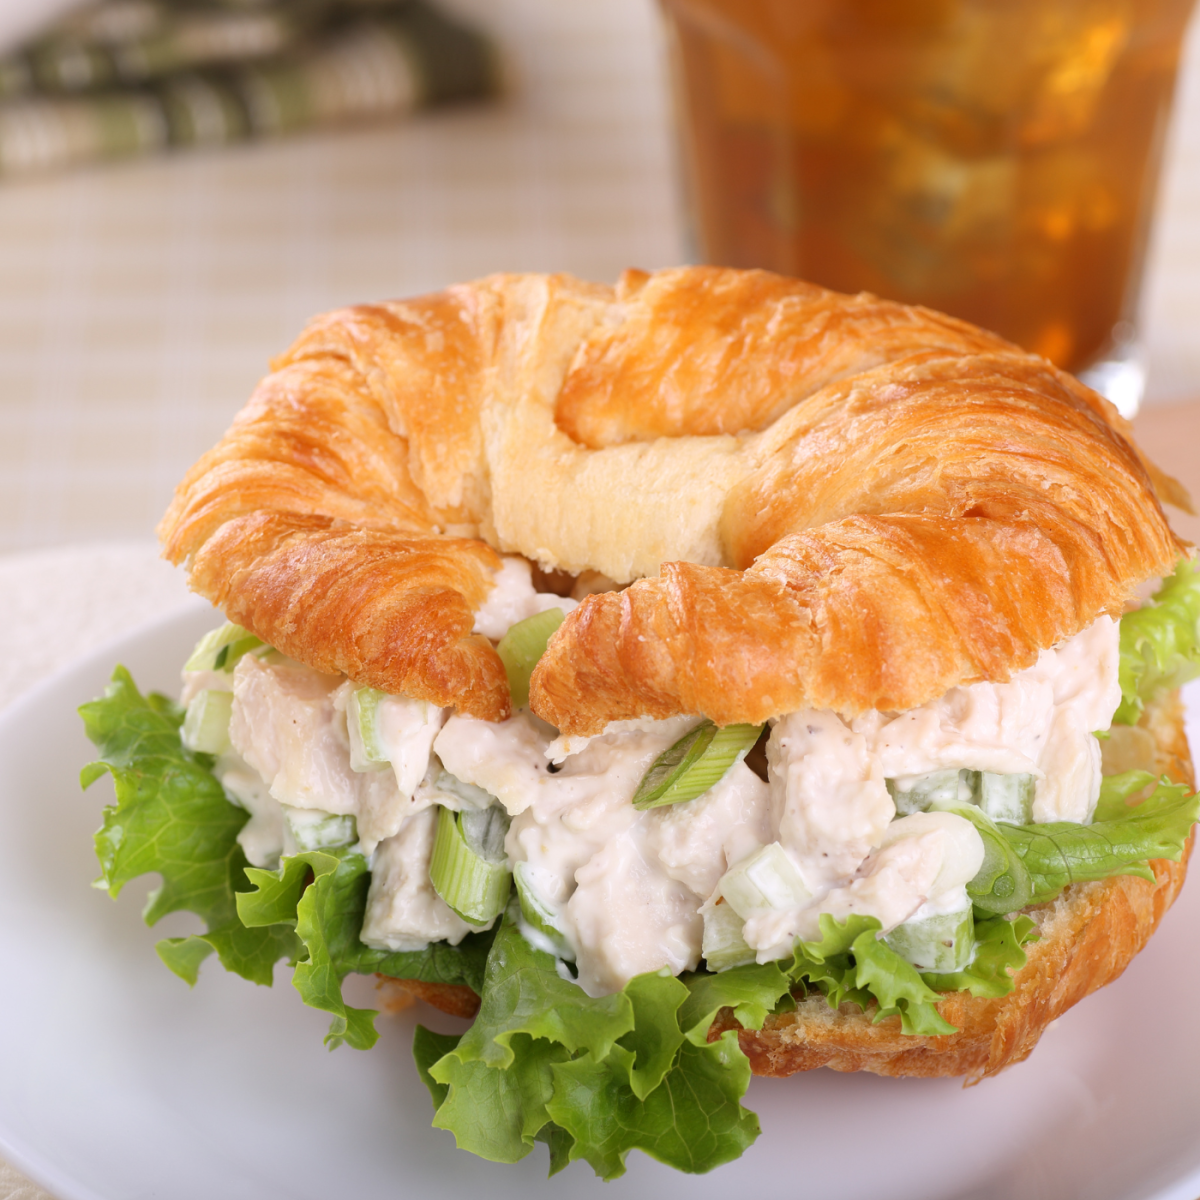 Best Chicken Salad Sandwich Recipe